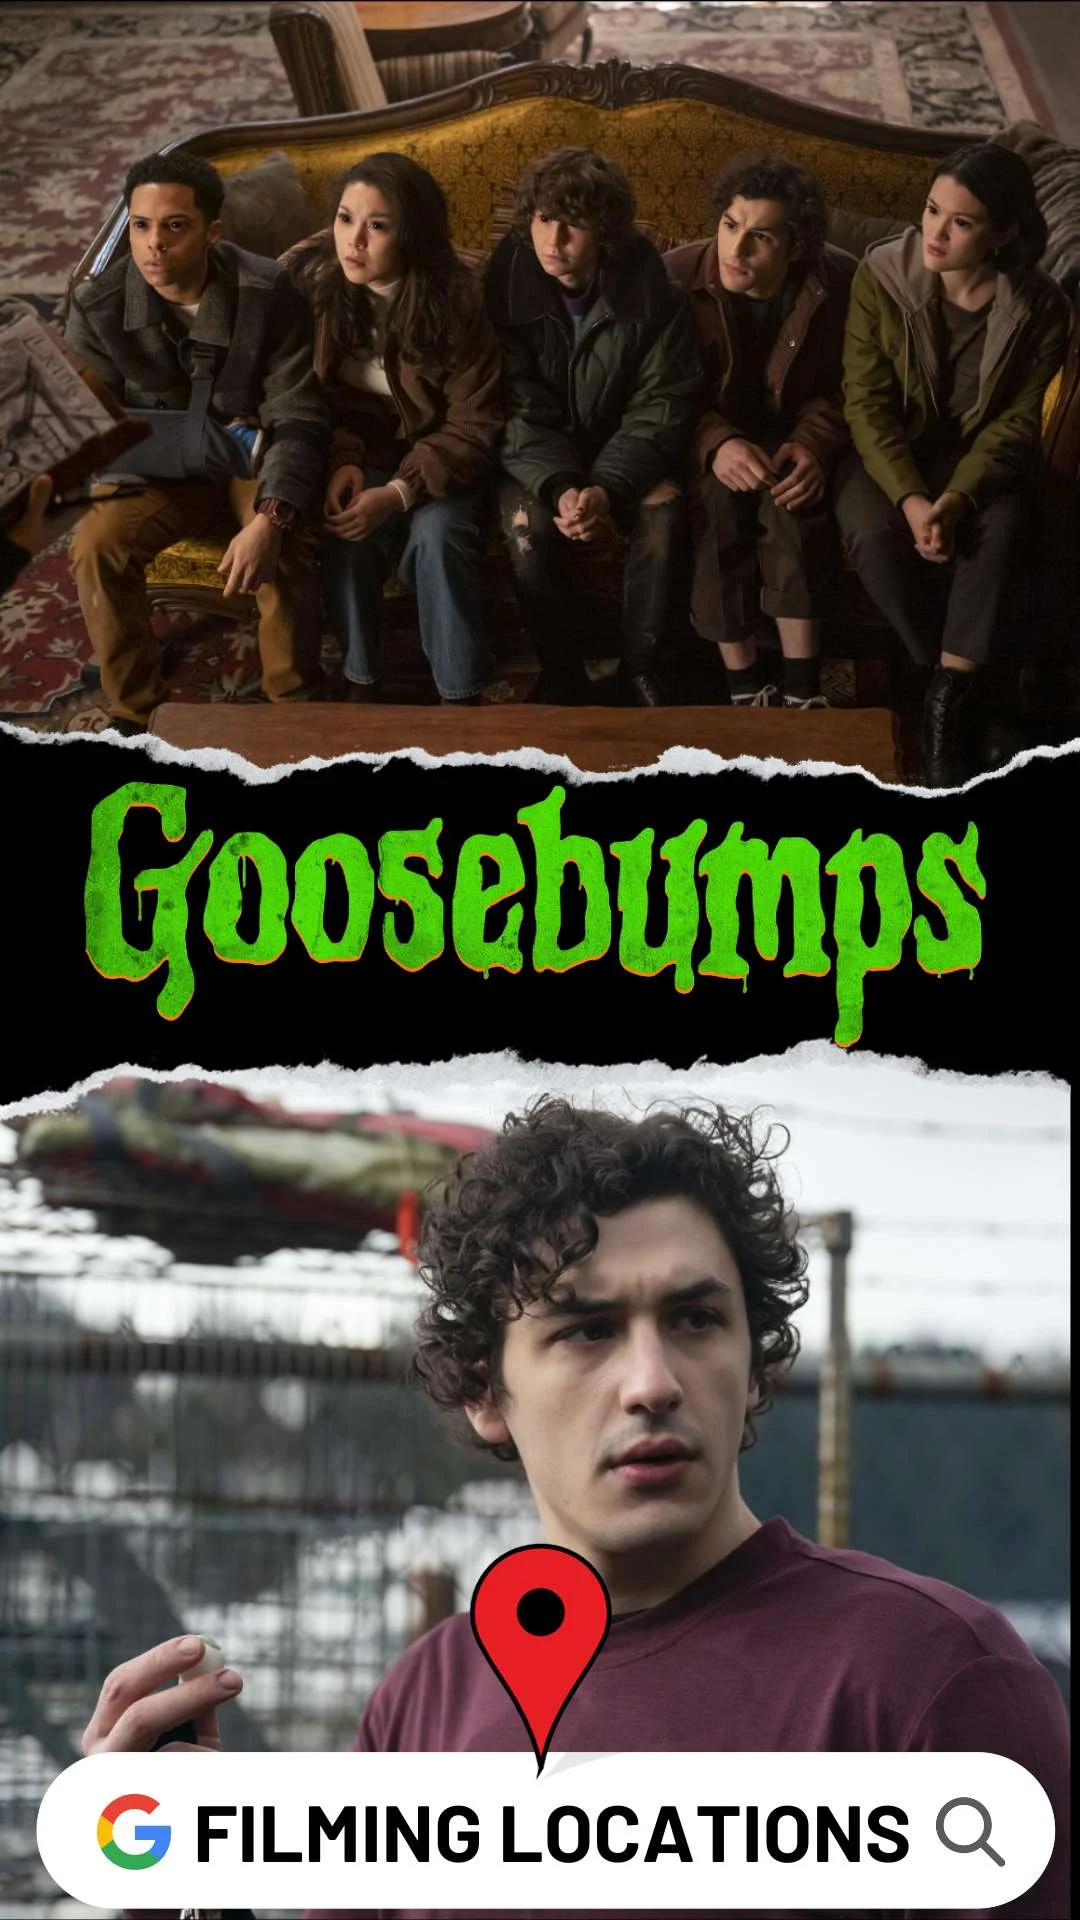 Goosebumps Filming Locations